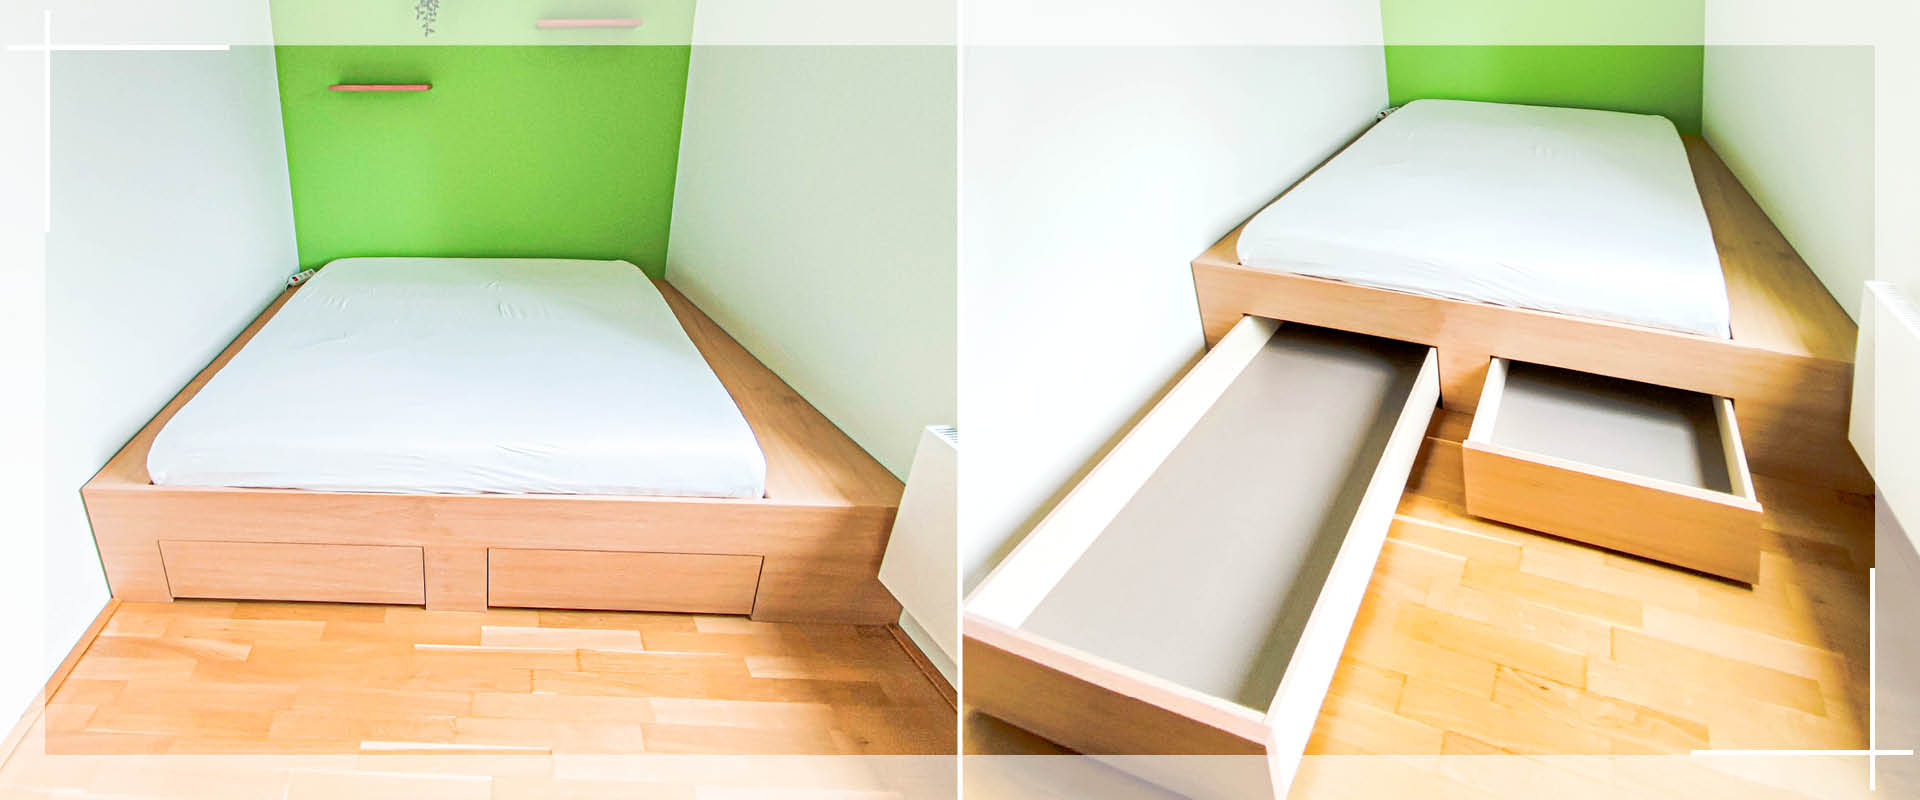 Tischlerei nipa Hamburg | Individuelle Einrichtungen aus Holz – Referenz Möbeltischler: Doppelbett nach Maß für Nische mit Schubkästen